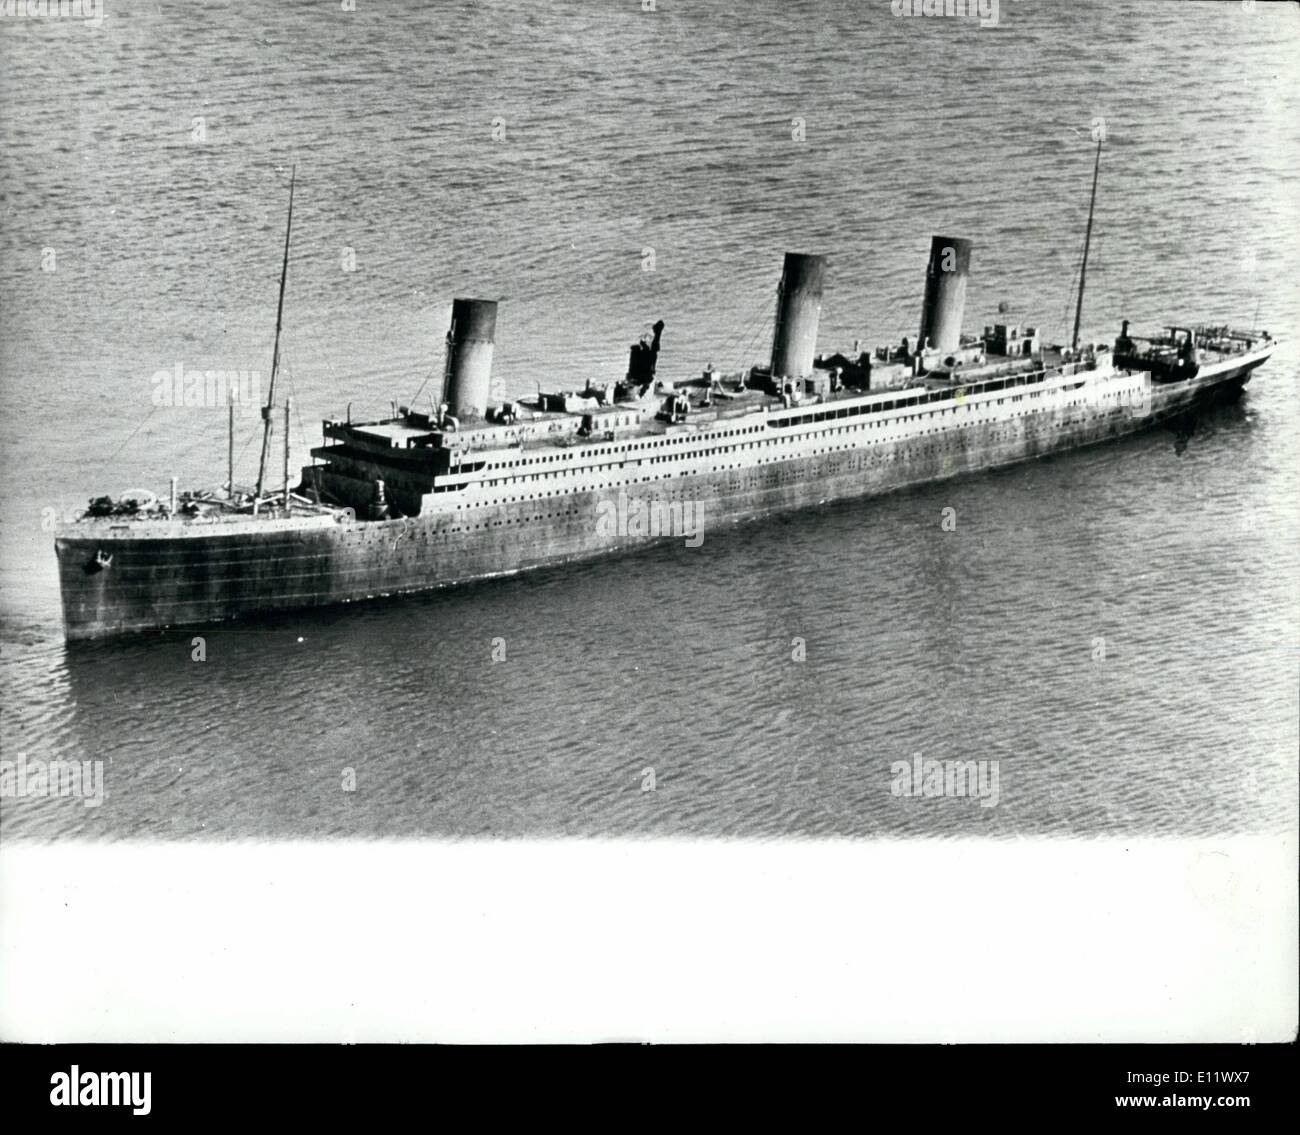 Septembre 09, 1980 - Montée du Titanic : décrit comme l'un des projets les plus ambitieux de la décennie, les producteurs de films ont maintenant fait une photo sur l'élevage de la célèbre paquebot de croisière de luxe, ''Titanic''. Le navire à travers à être insubmersible a frappé un iceburg sur son voyage inaugural et coulé en 1500 au large de Terre-Neuve, les gens avec elle en 1912, a été un sujet de spéculation pour les experts de récupération pendant de nombreuses années. Le film est basé sur le roman best-seller par Clive Cusslar, appelé ''lever le Titanic'' Banque D'Images